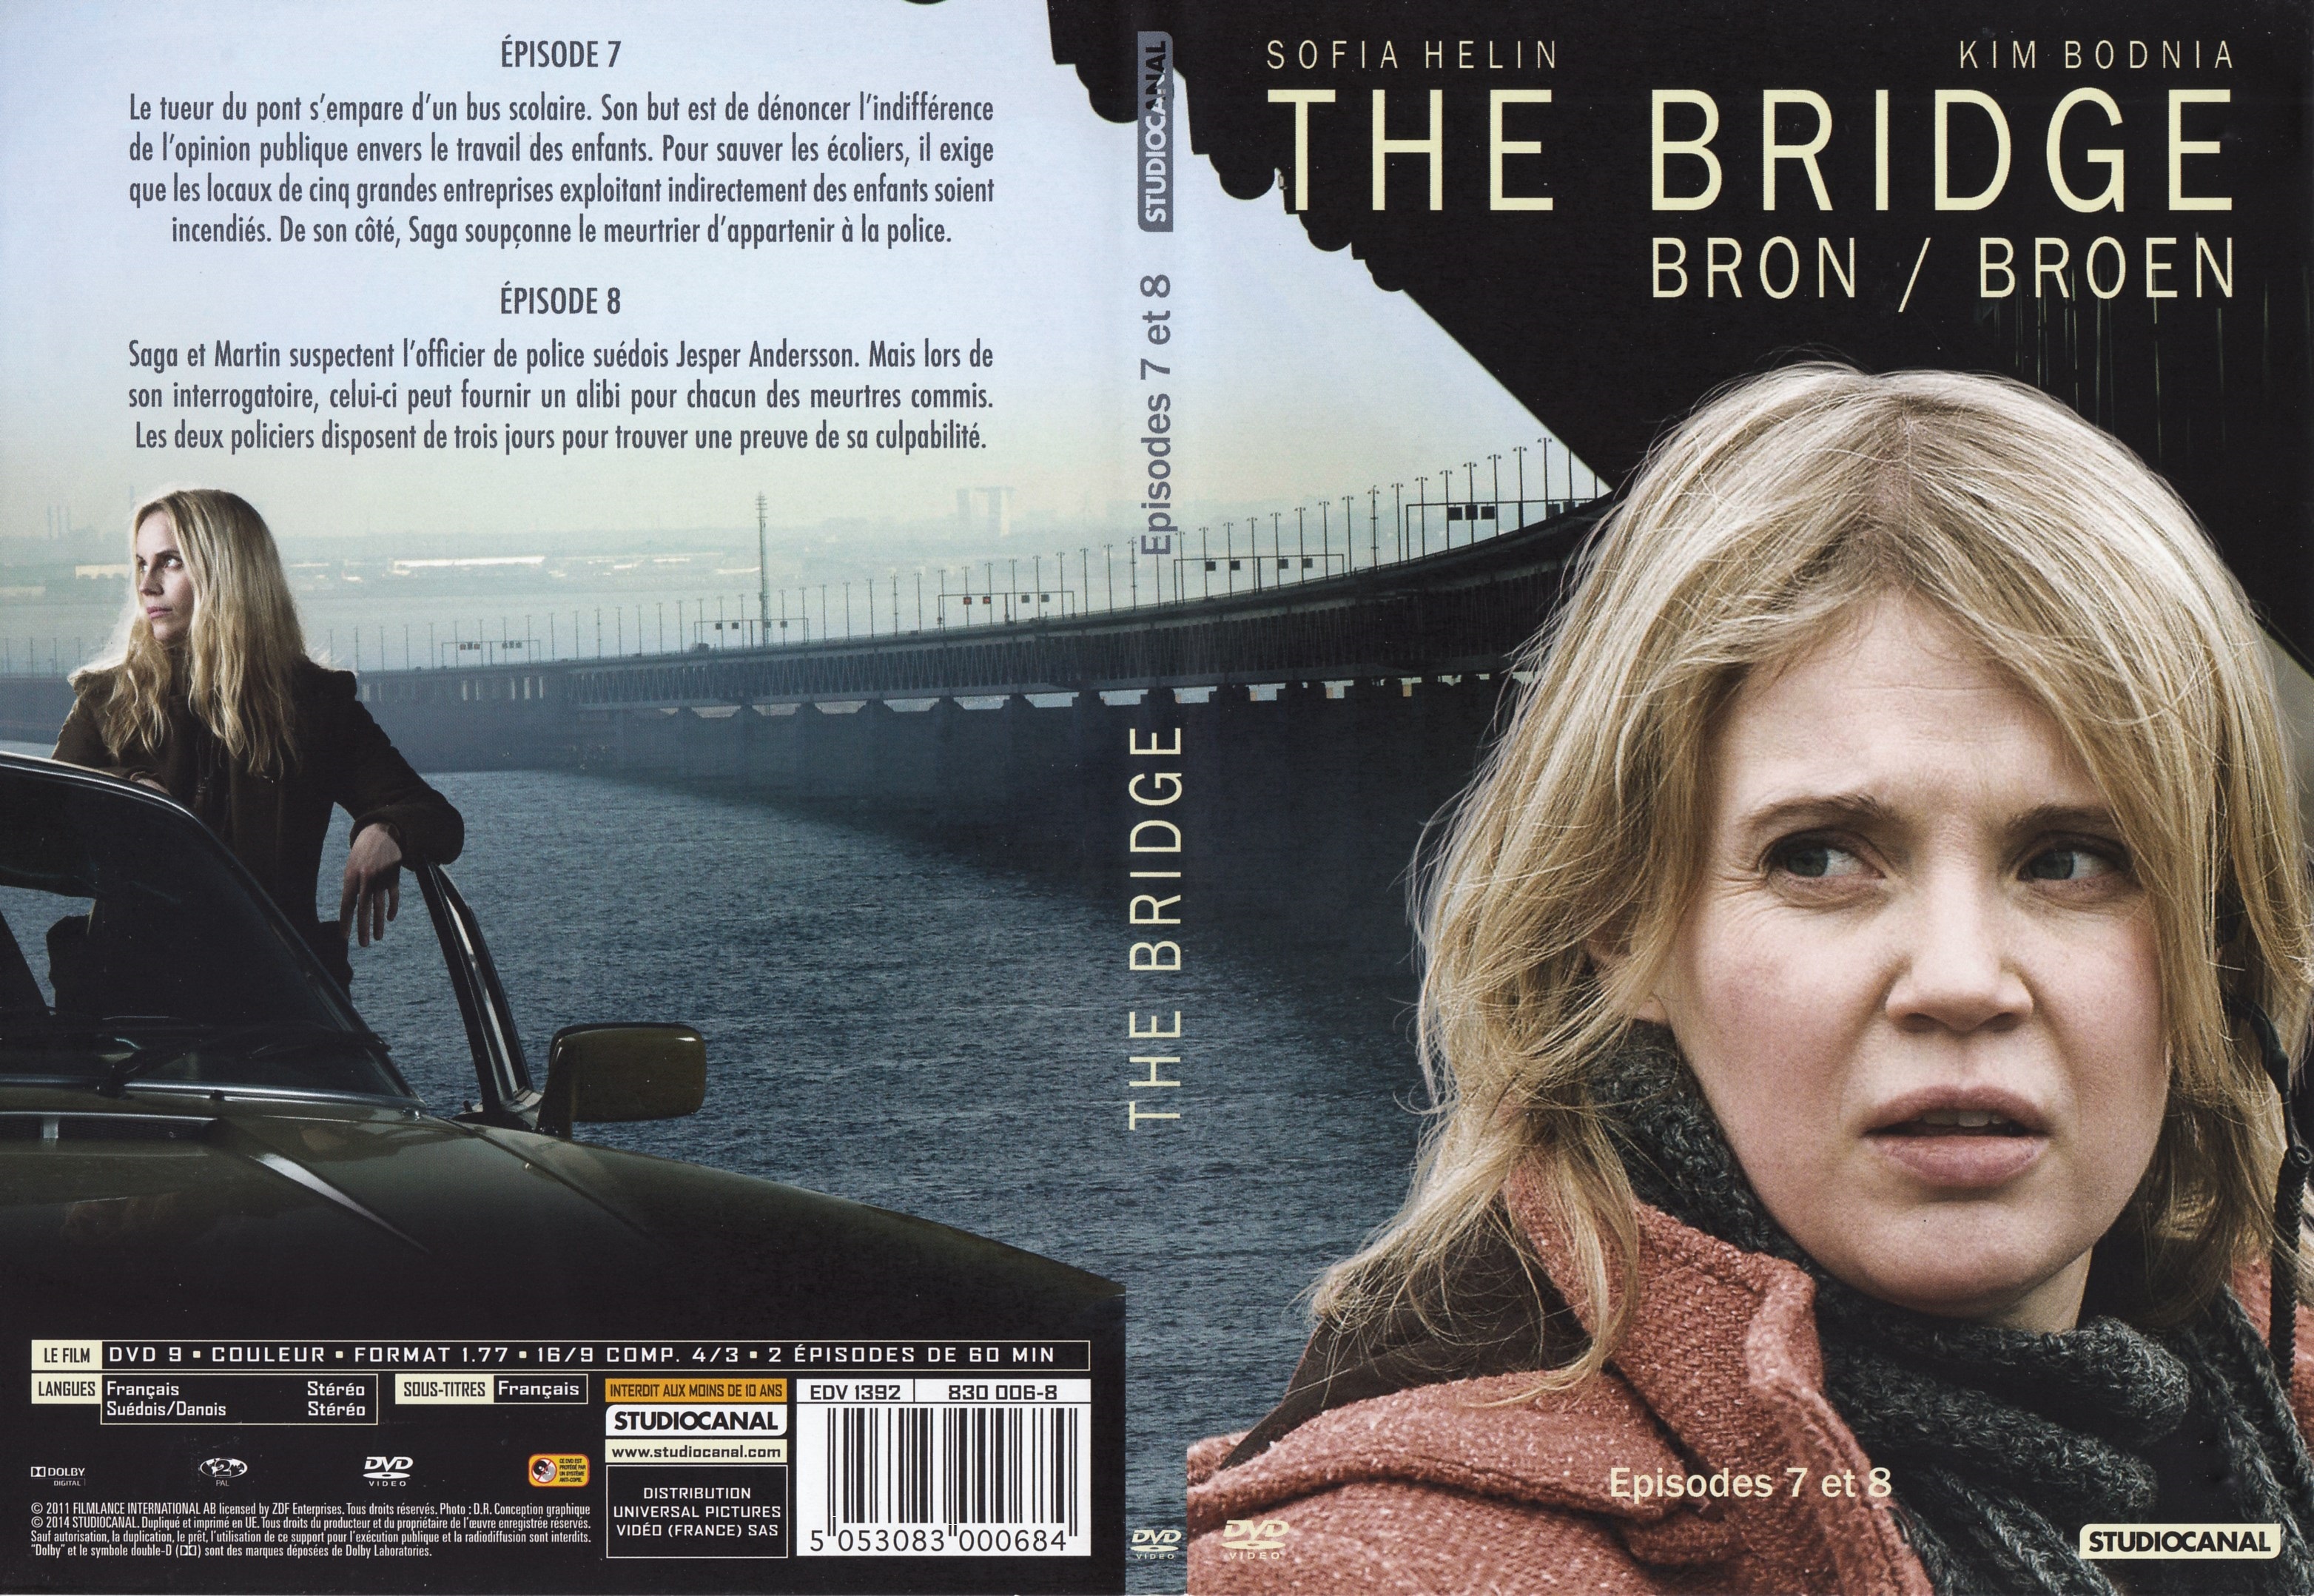 Jaquette DVD The bridge Saison 1 DVD 3